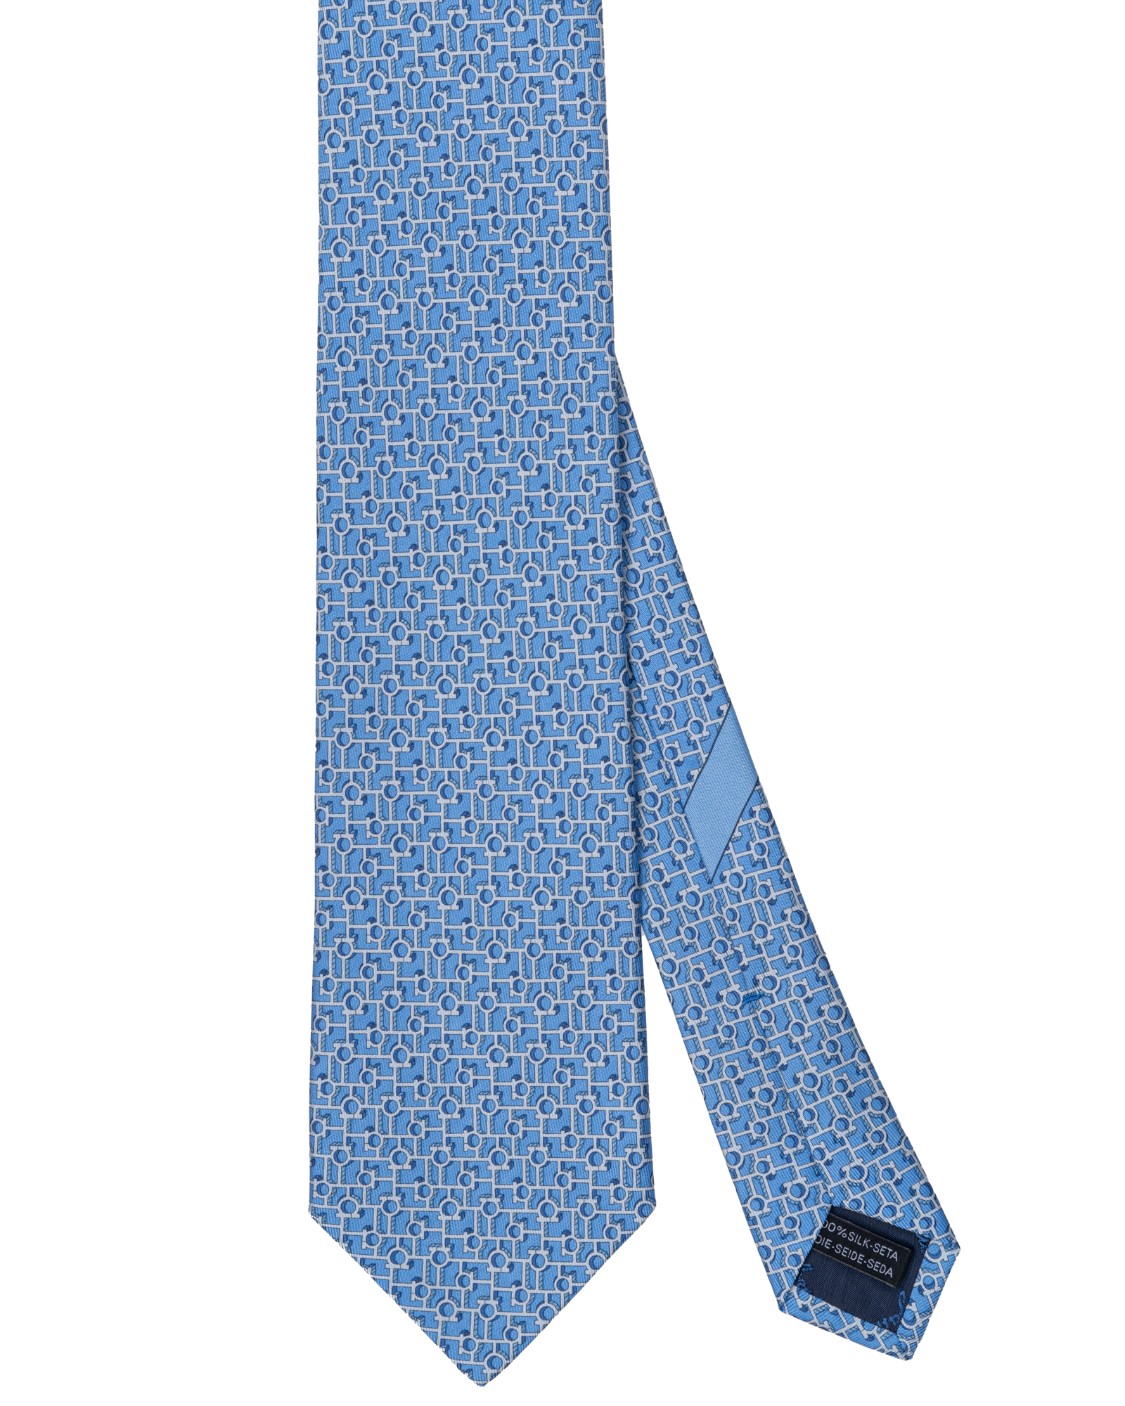 shop SALVATORE FERRAGAMO  Cravatta: Salvatore Ferragamo cravatta in seta con stampa Paper.
Trame geometriche.
Composizione: 100% seta.
Made in Italy.. 350732 4PAPER-007754998 number 509915